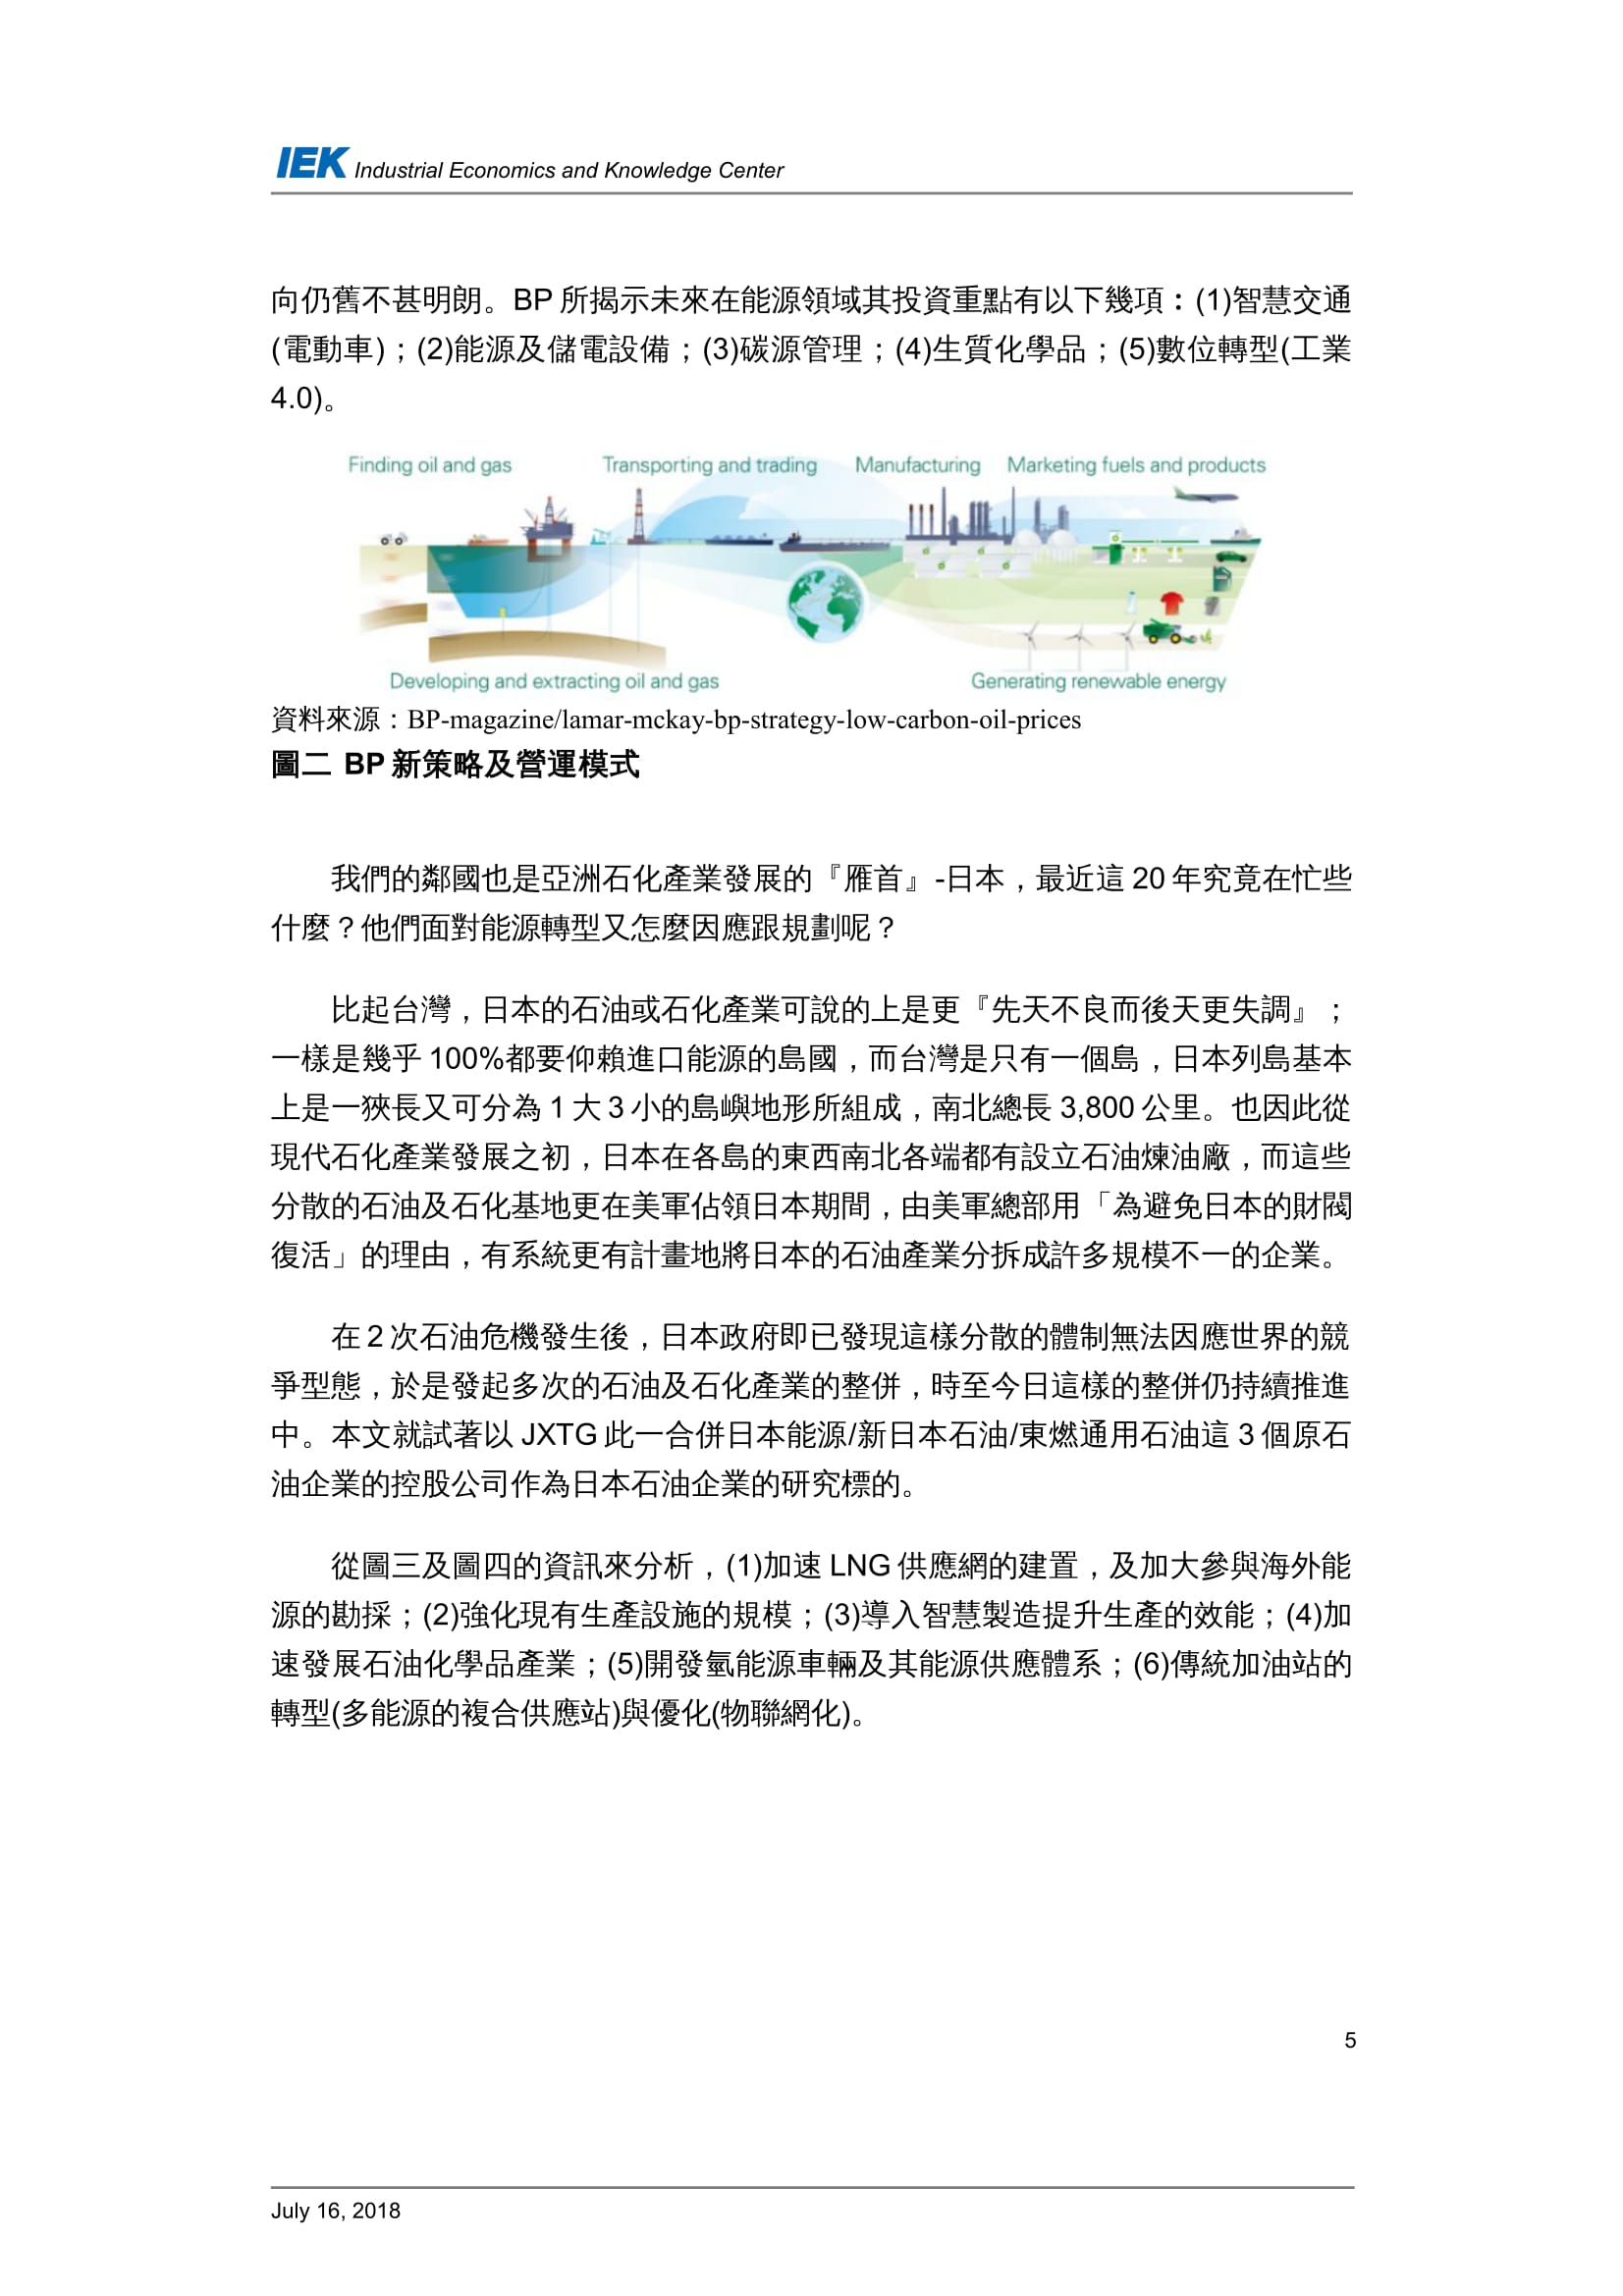 從國外石油產業的轉型看台灣中油的轉型策略_共11頁_第6頁內文(詳如下方附件)